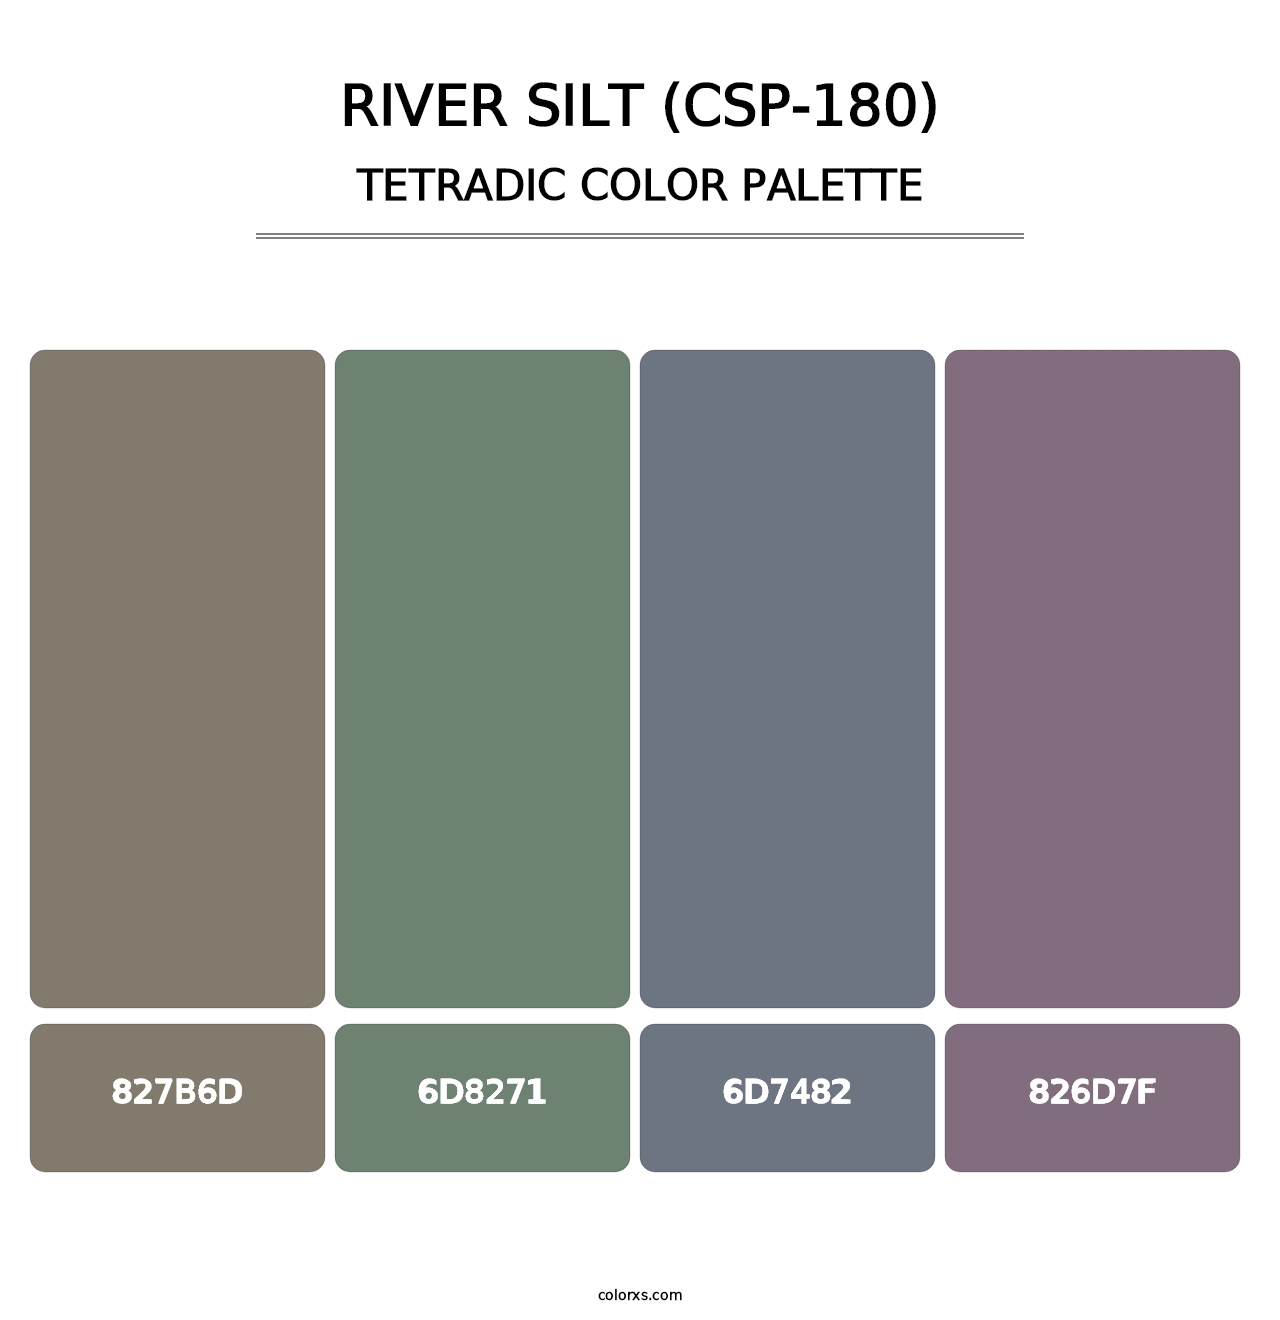 River Silt (CSP-180) - Tetradic Color Palette